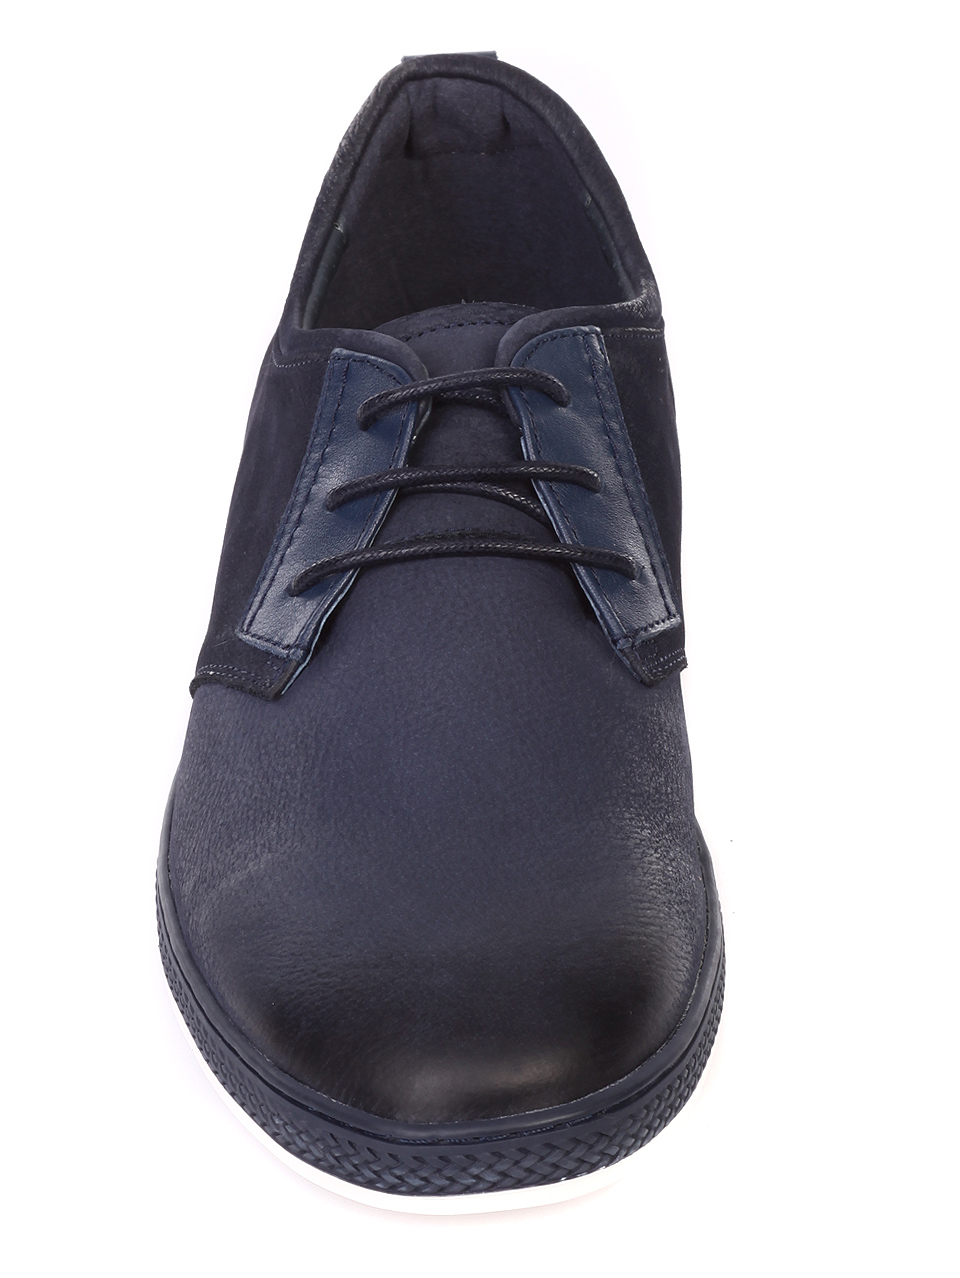 Ежедневни мъжки обувки от естествена кожа 7N-19228 navy